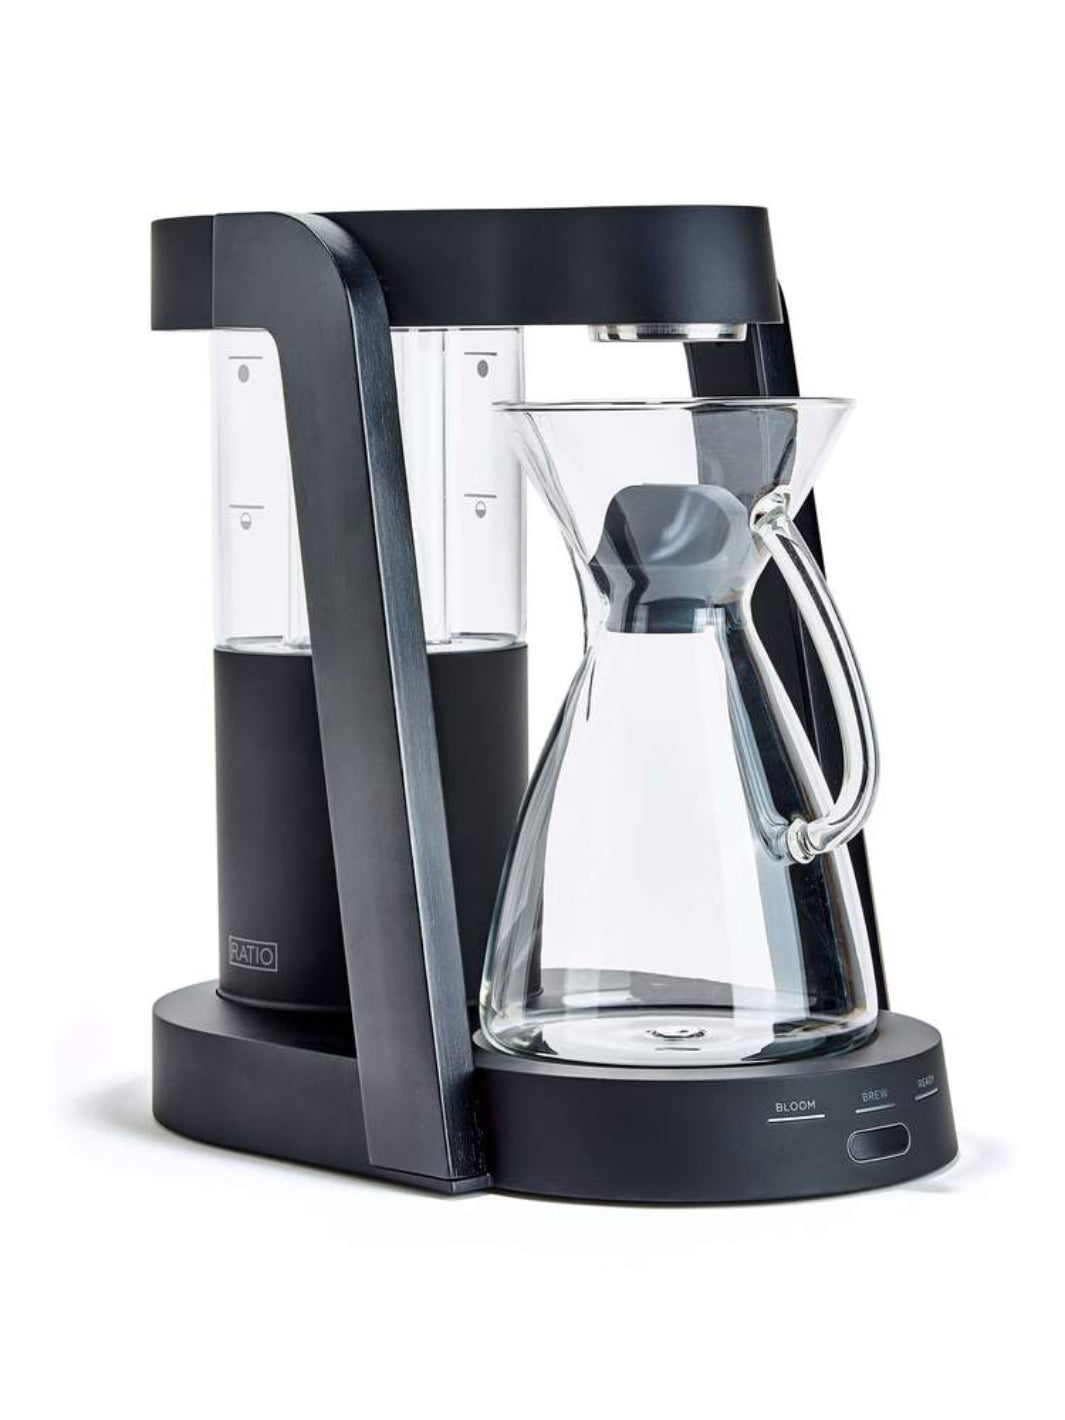 RATIO Eight Coffee Maker (120V)